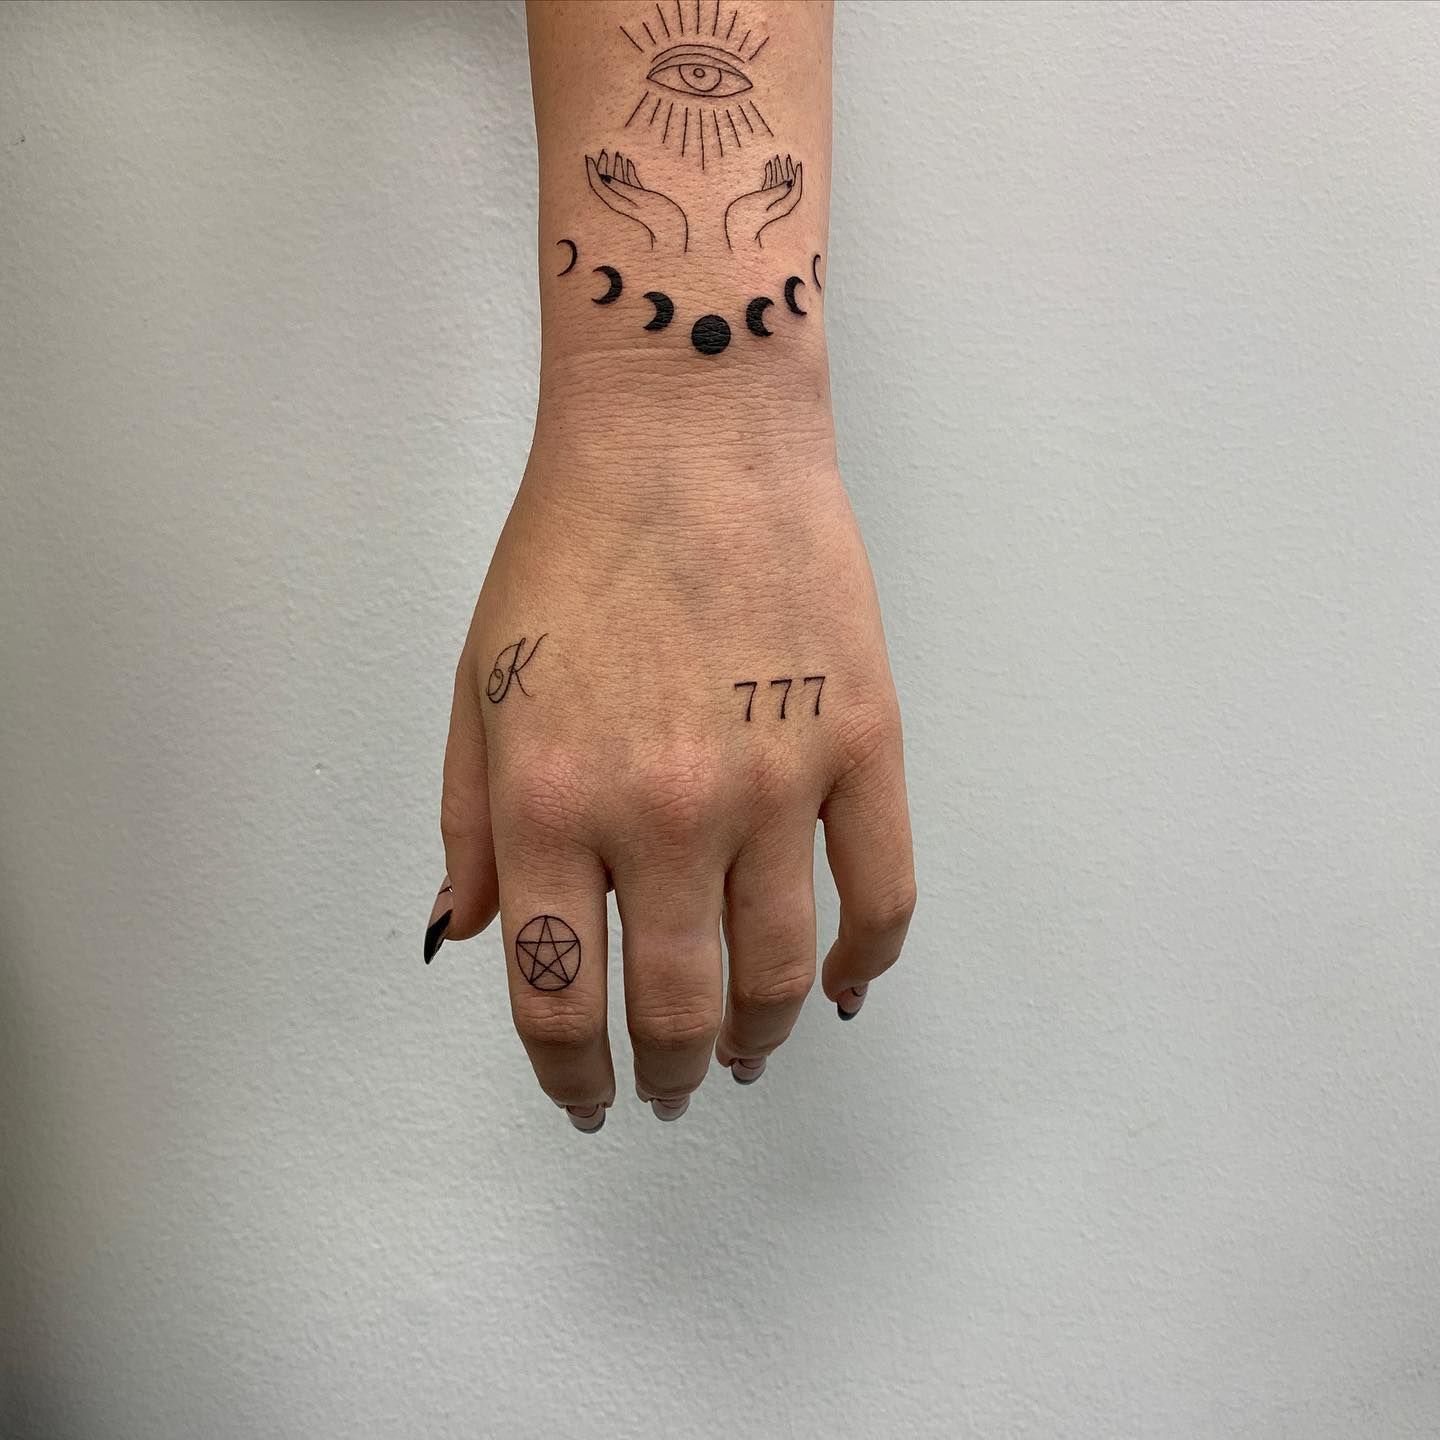 Number 777 tattooed on the wrist